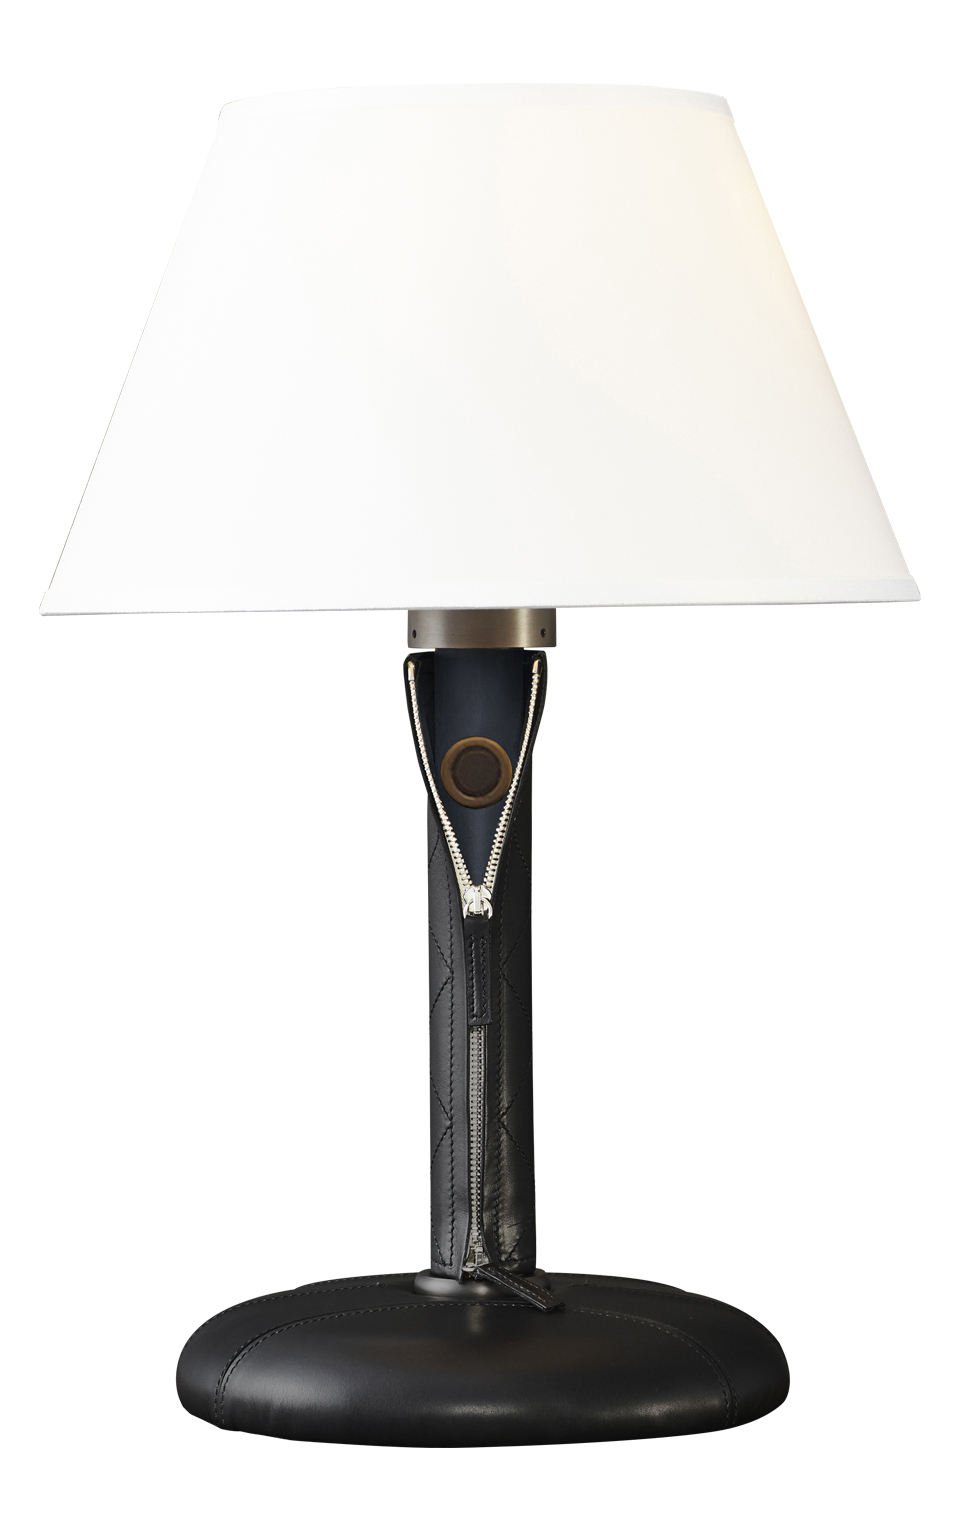 Zip è una lampada da tavolo a LED con struttura in legno o rivestita in pelle e tessuto con dettagli in bronzo e paralume in lino, cotone o seta con bordo fatto a mano, del catalogo di Promemoria | Promemoria